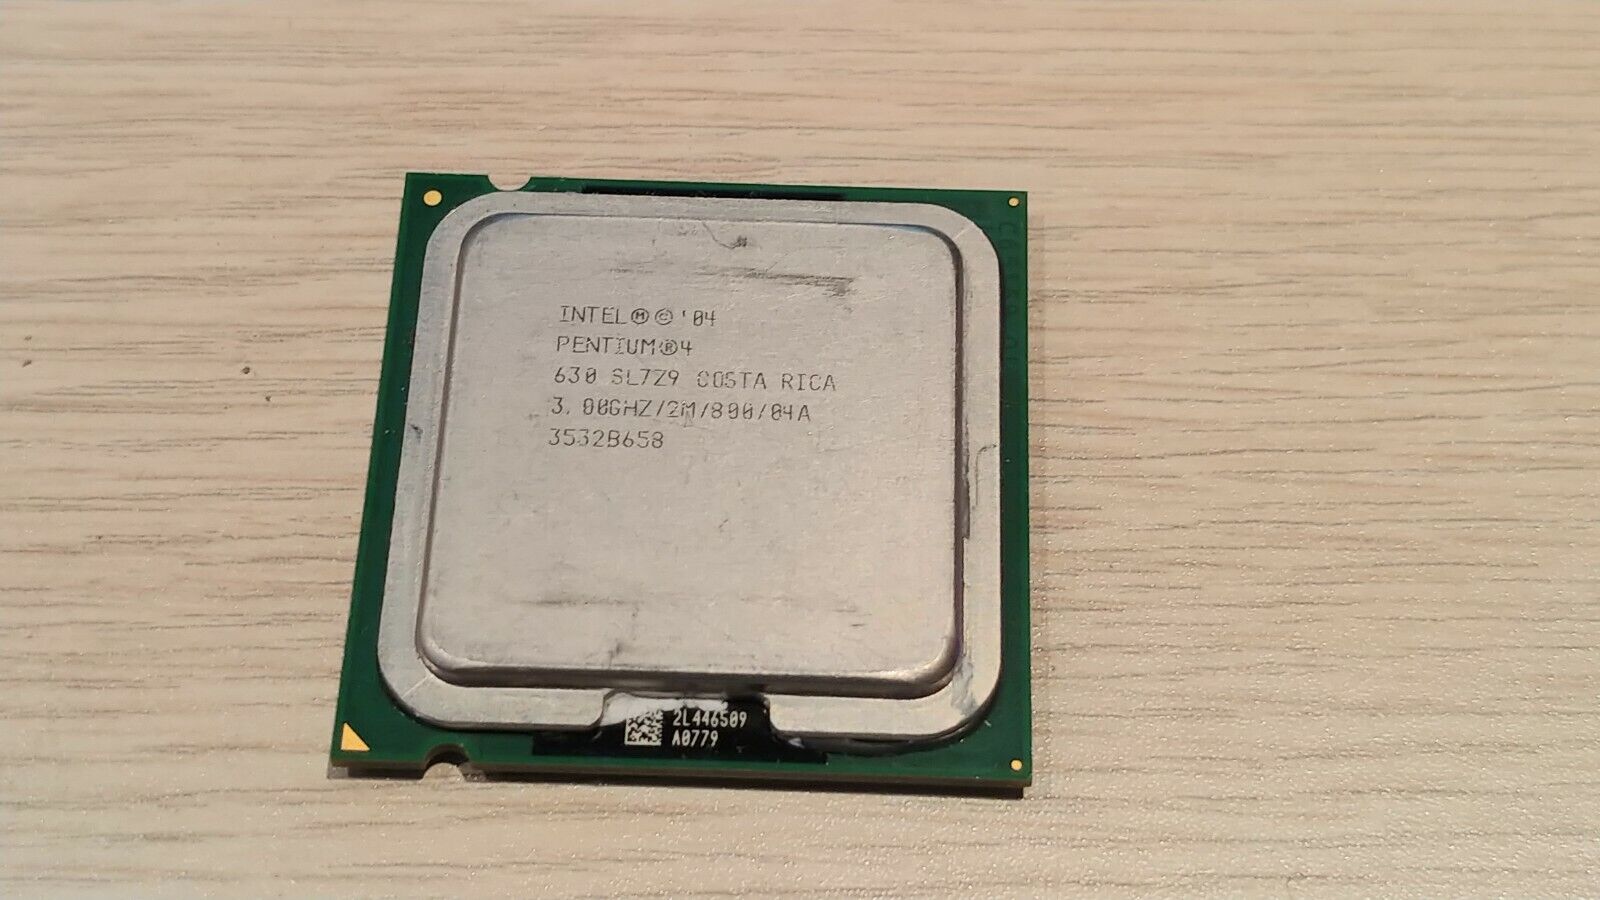 Intel Pentium 4 630 CPU SL7Z9 3.00GHz CPU Processor